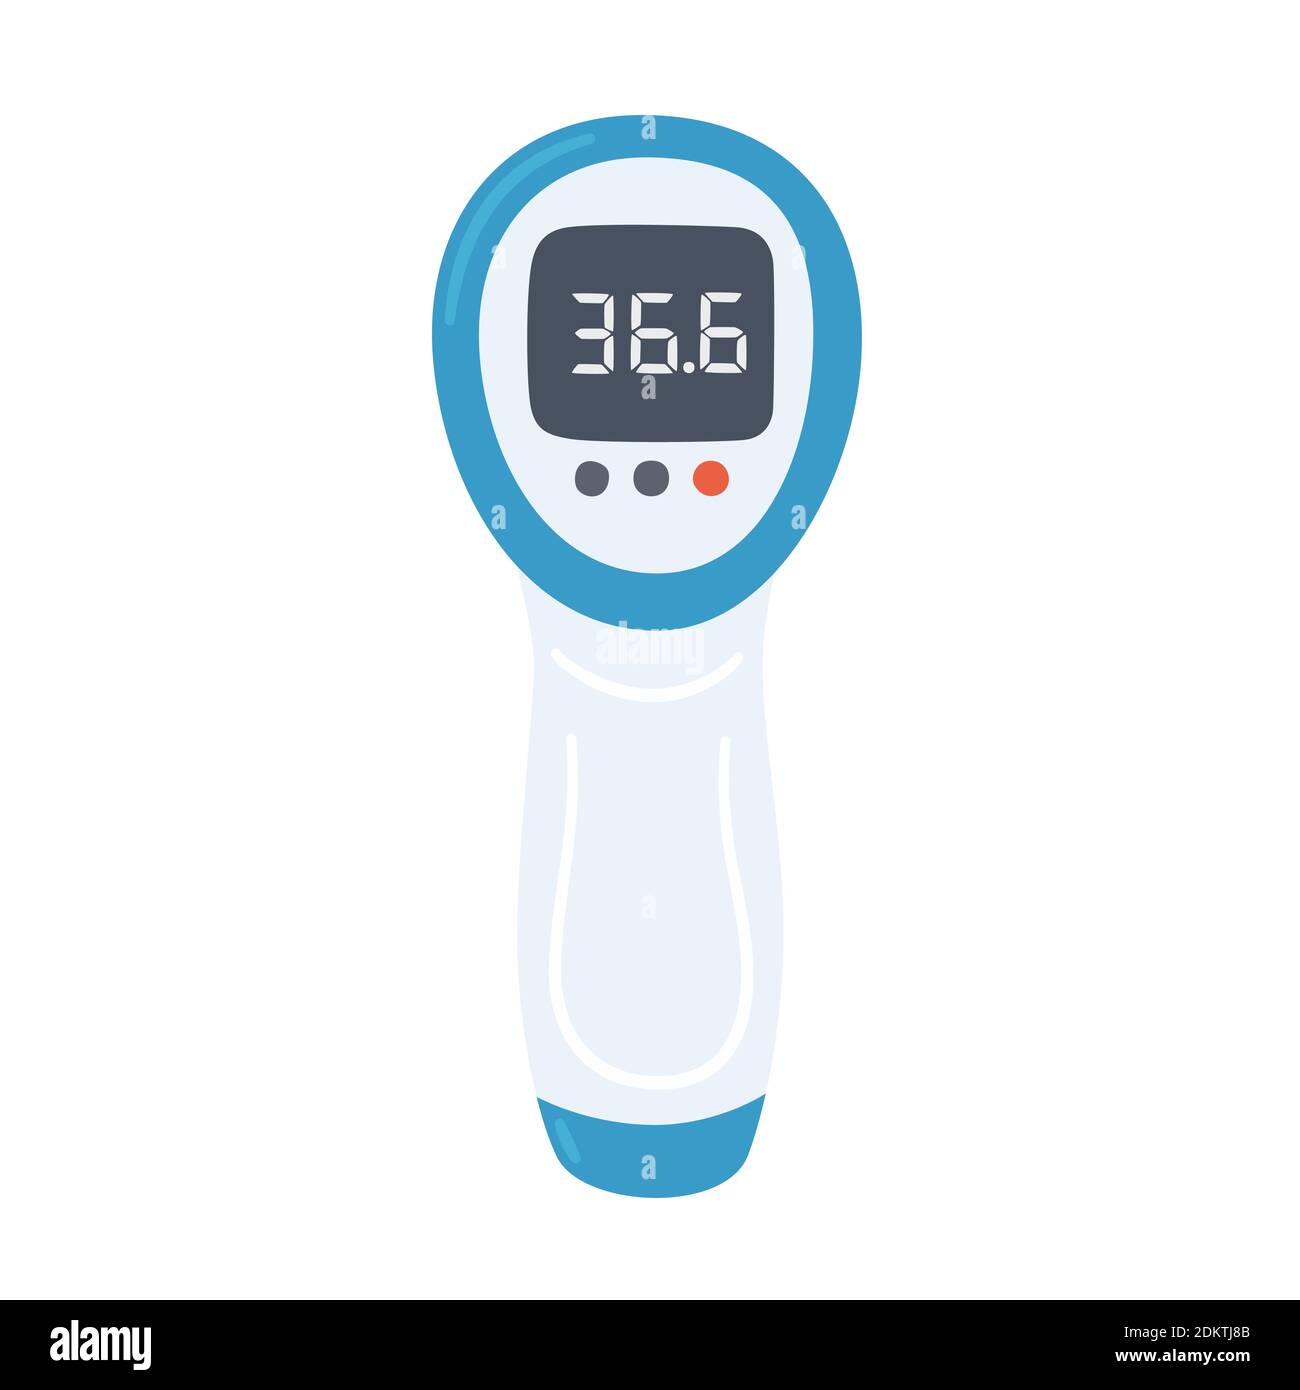 Termometro elettronico a infrarossi senza contatto con valori normali.  Apparecchio di misurazione medicale. Vettore isolato Immagine e Vettoriale  - Alamy